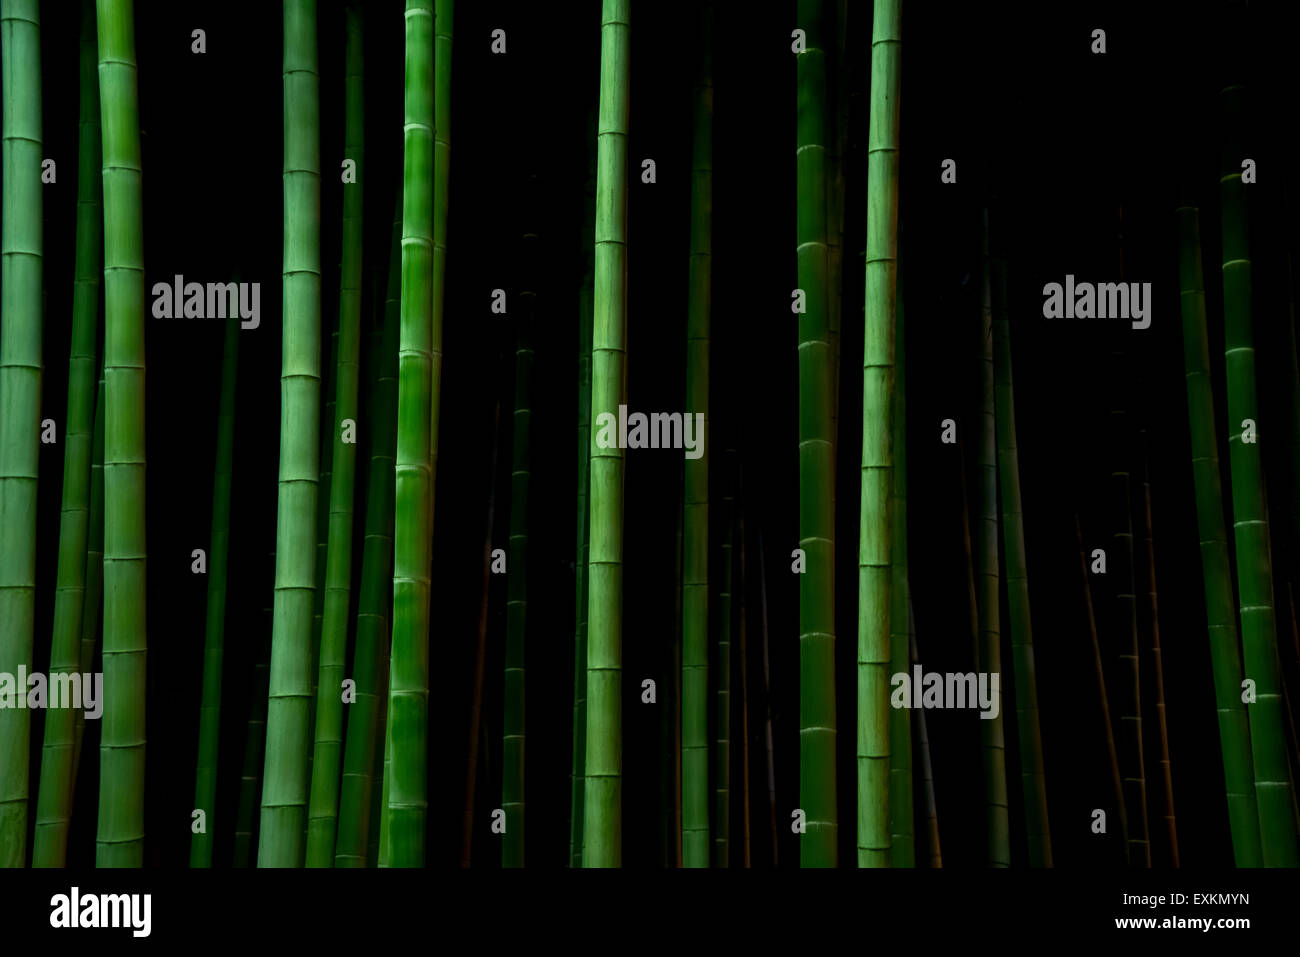 Bamboo trees at night, Tokyo, Japan Stock Photo